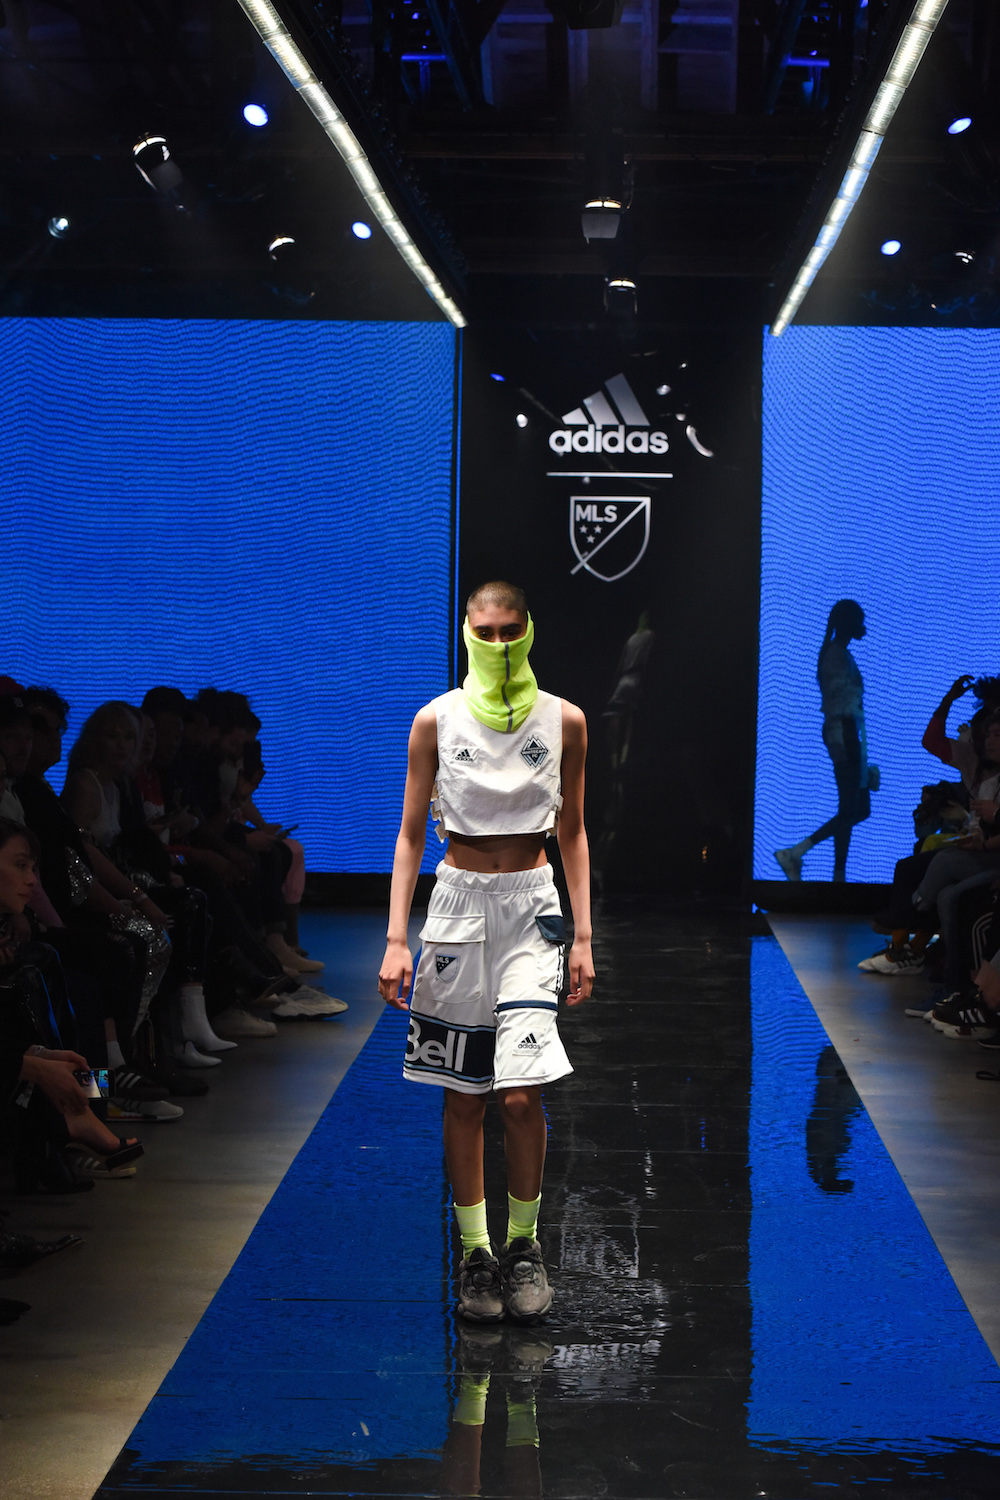 Adidas MLS SEAMS